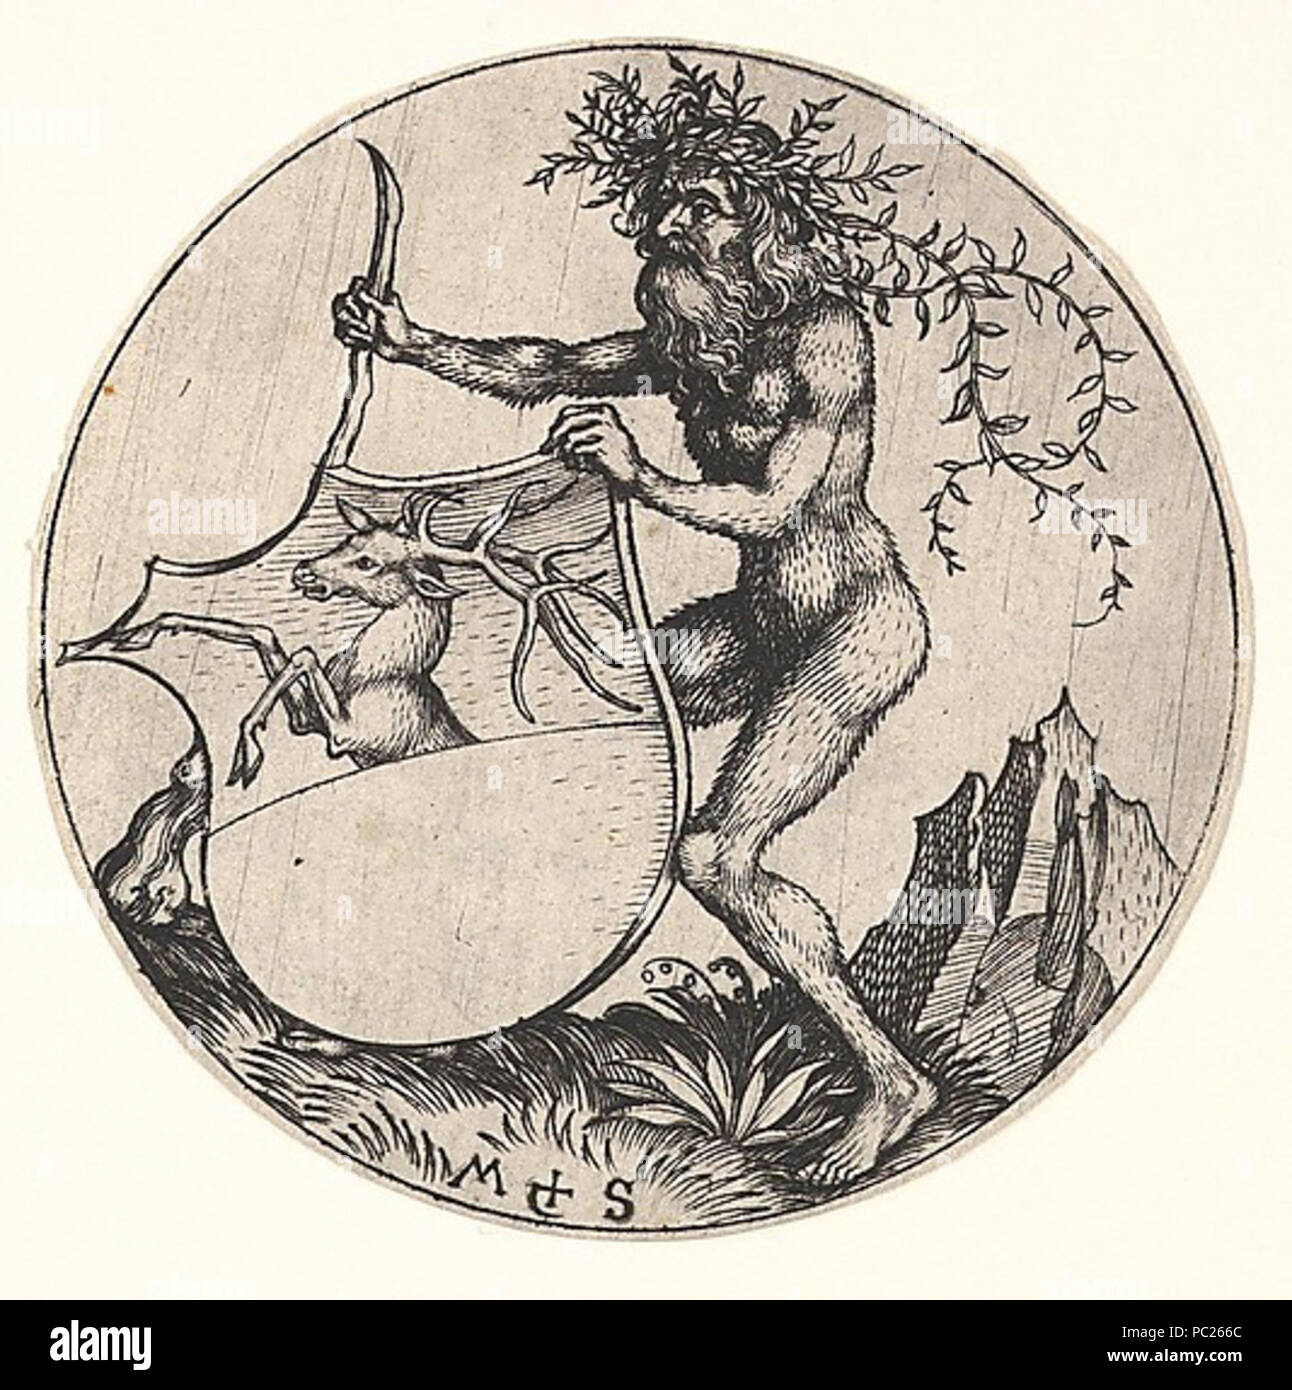 403 Martin Schongauer - Wappenschild mit Hirsch, von einem wilden Mann gehalten (L 103) Stock Photo